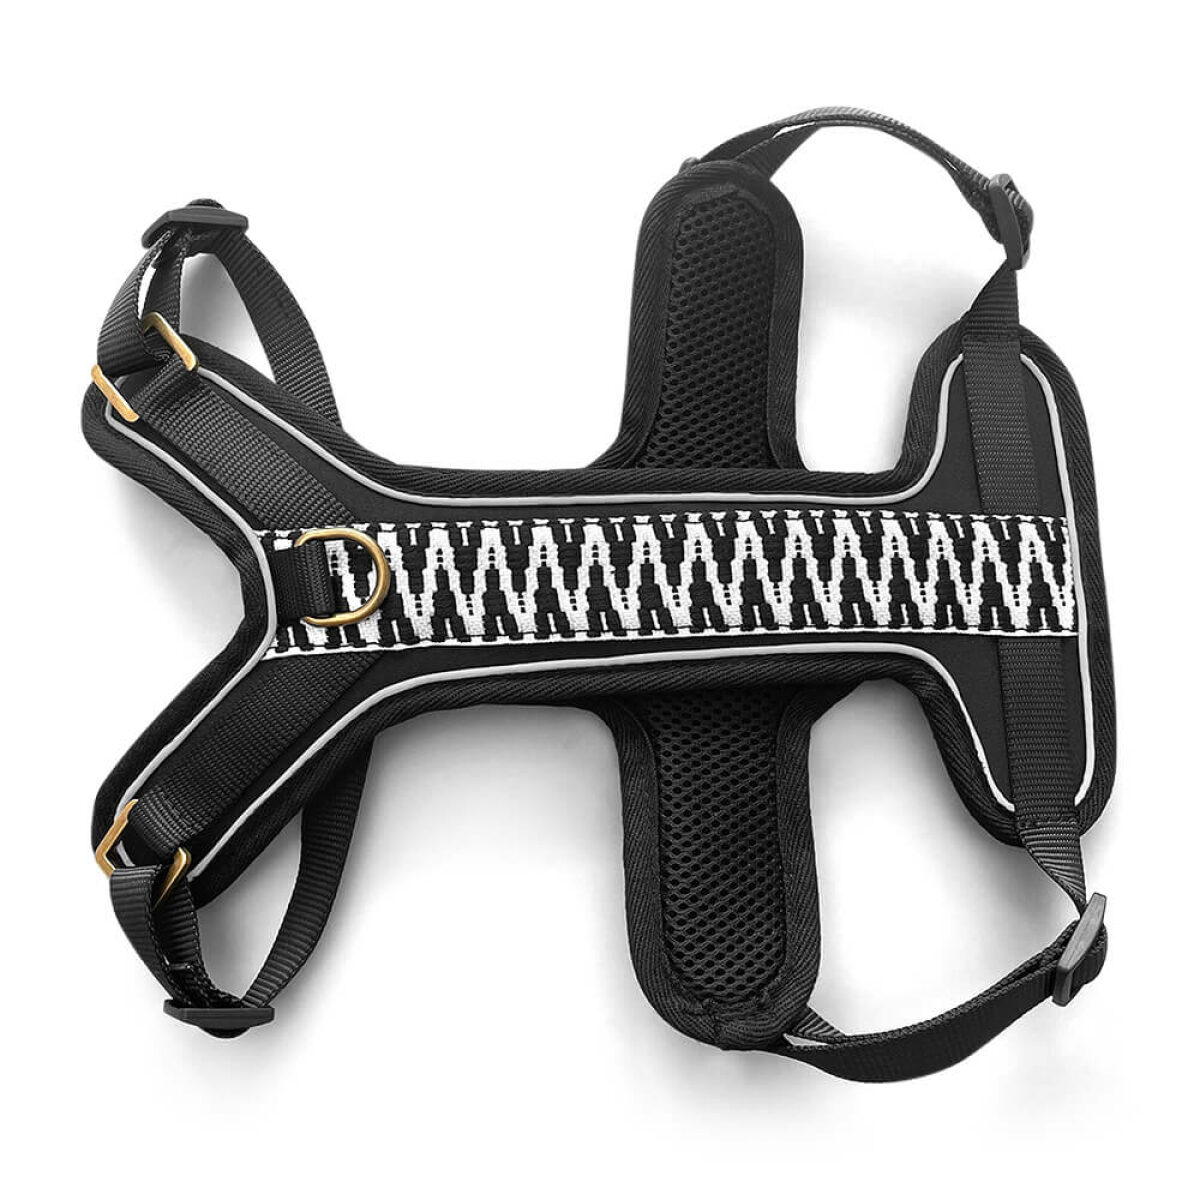 Hund mit Premium Hundegeschirr Gepolstert in Schwarz/Weiß vorne